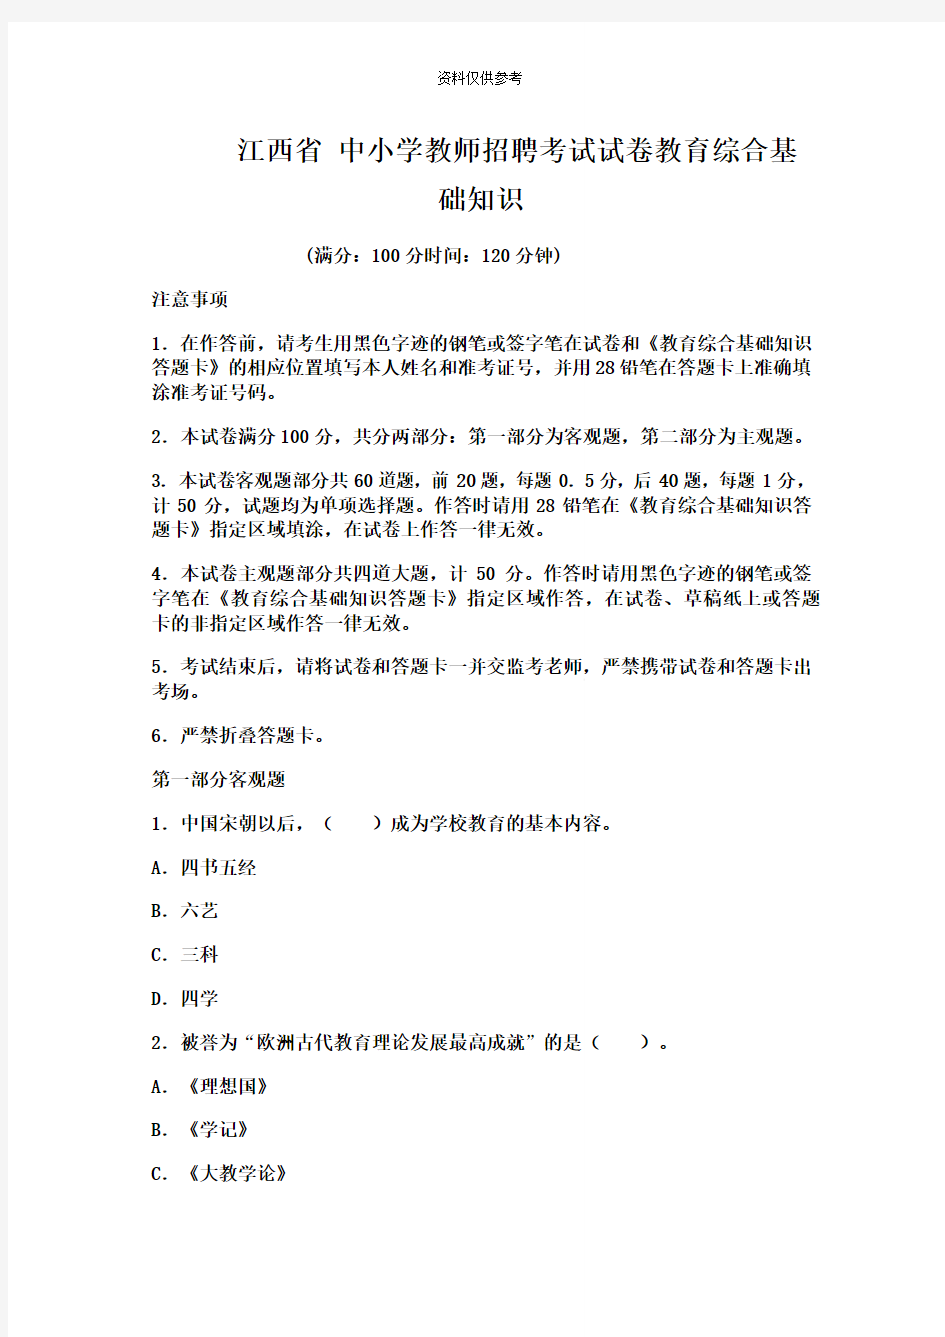 江西省中小学教师招聘考试试卷教育综合基础知识